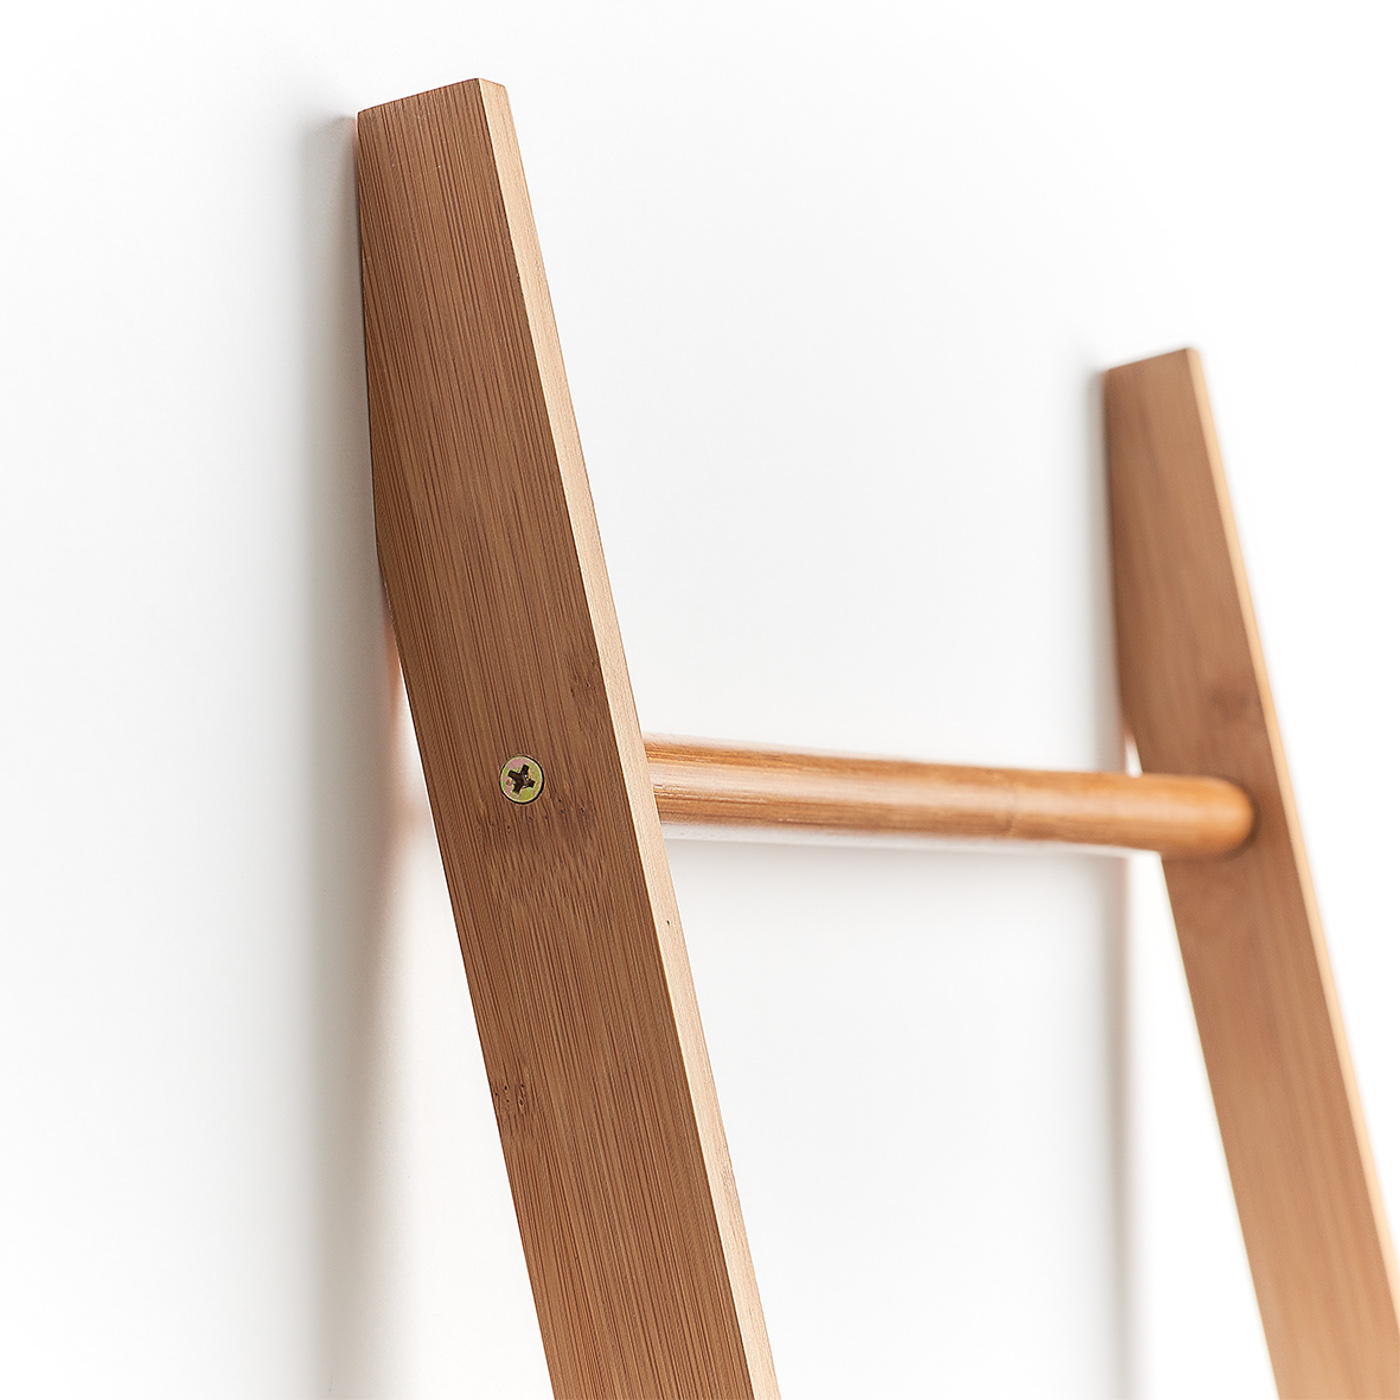 Leiter-Handtuchhalter, Bamboo lackiert, 50x3,5x182,5 cm. Farbe: natur. Entdecken Sie mit unserem Handtuchhalter eine neue und innovative